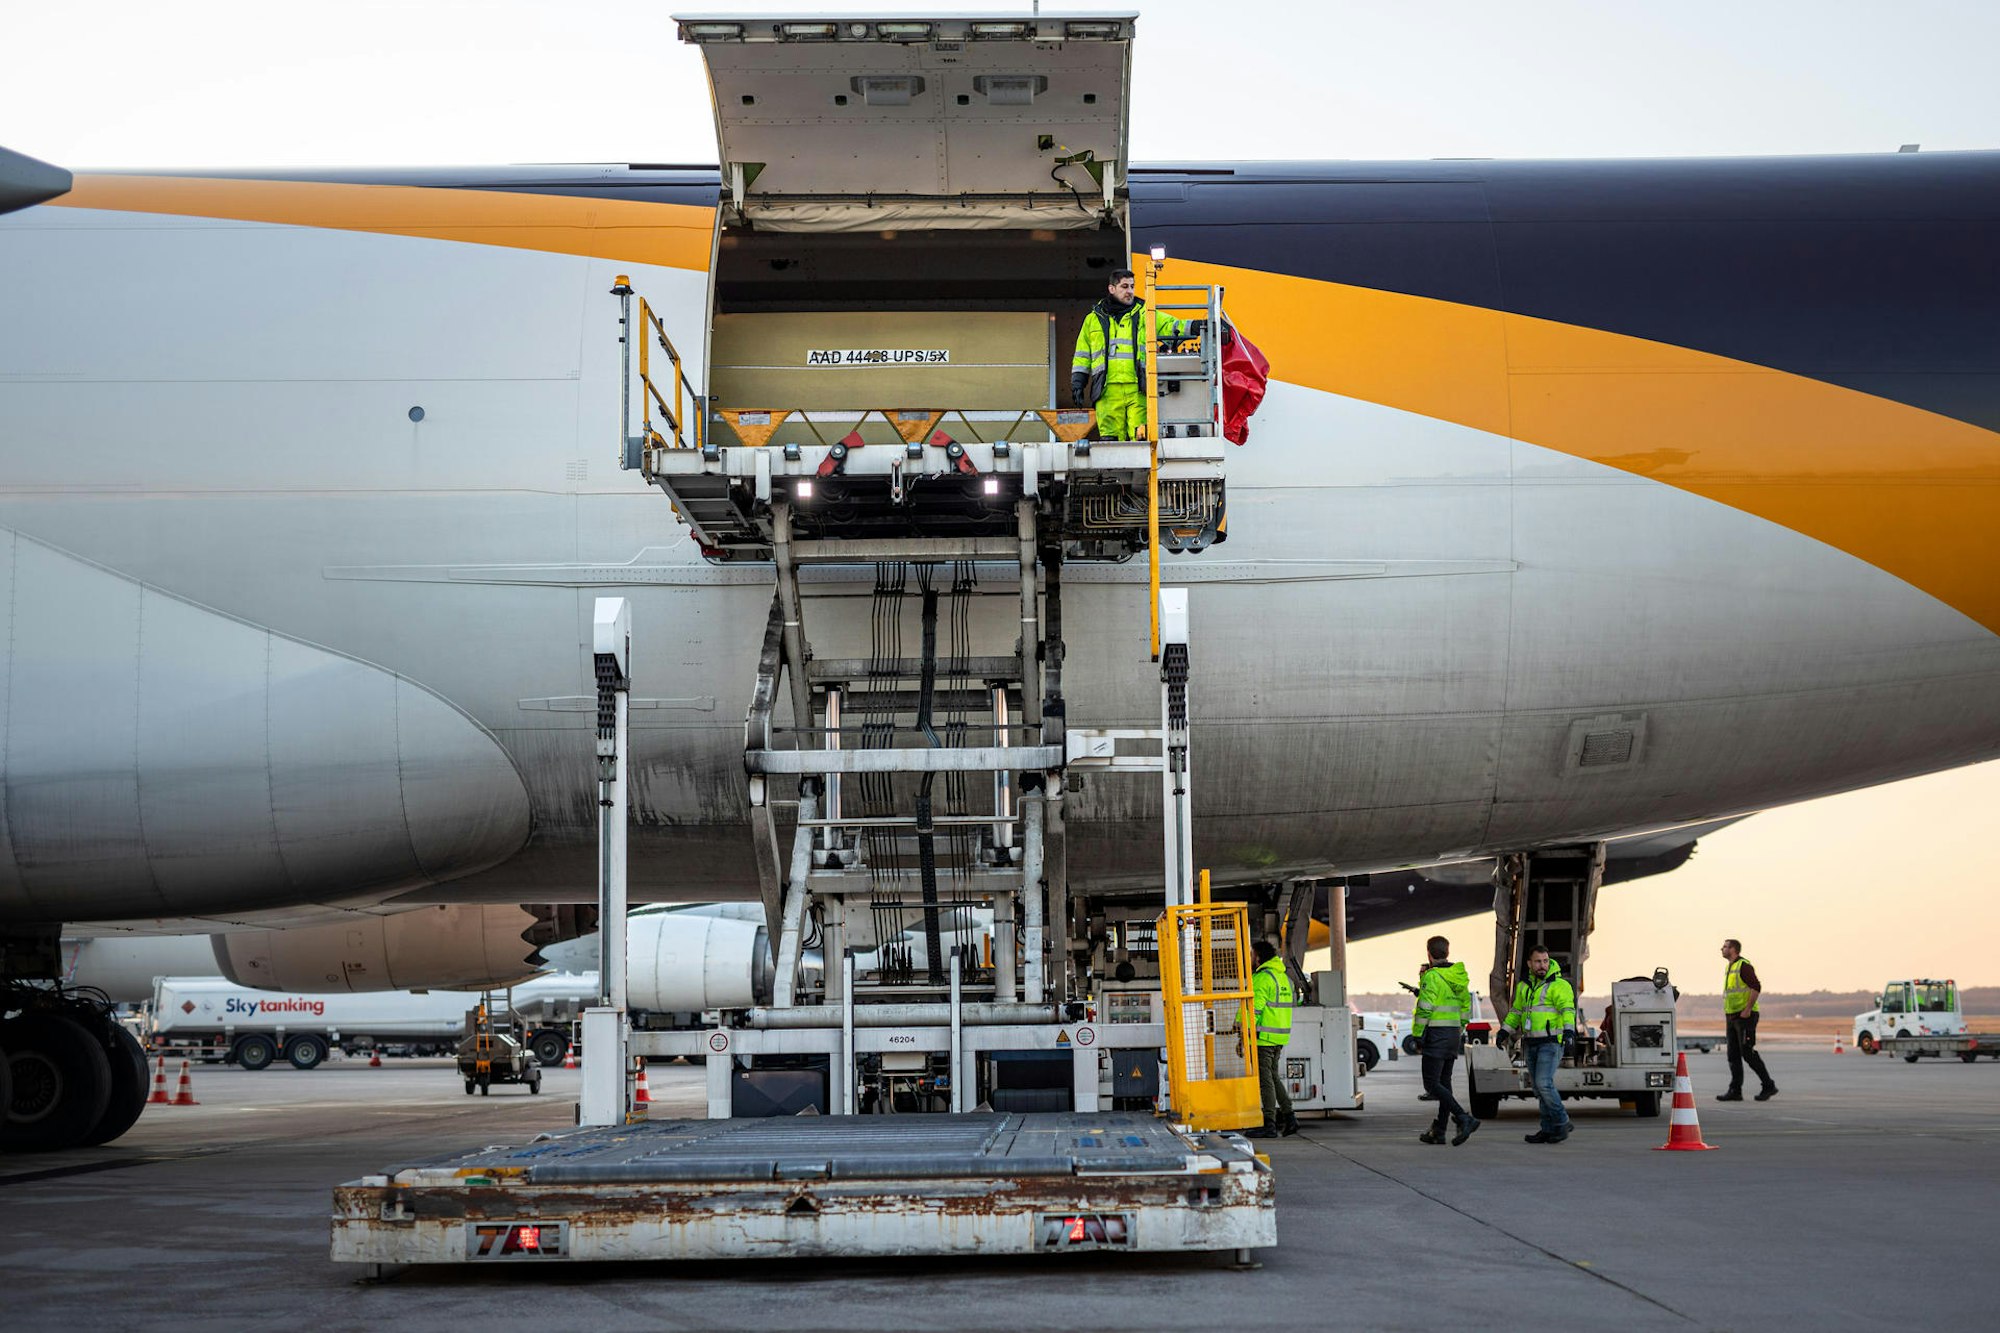 Hier wird ein Frachtflieger der Logistikfirma UPS am 2. April in Köln-Wahn entladen. 43 Jets setzt UPS täglich ab Köln ein. Vor allem wichtige medizinische Materialen werden so auch bei geschlossenen Landgrenzen auf der ganzen Welt nach NRW geflogen.